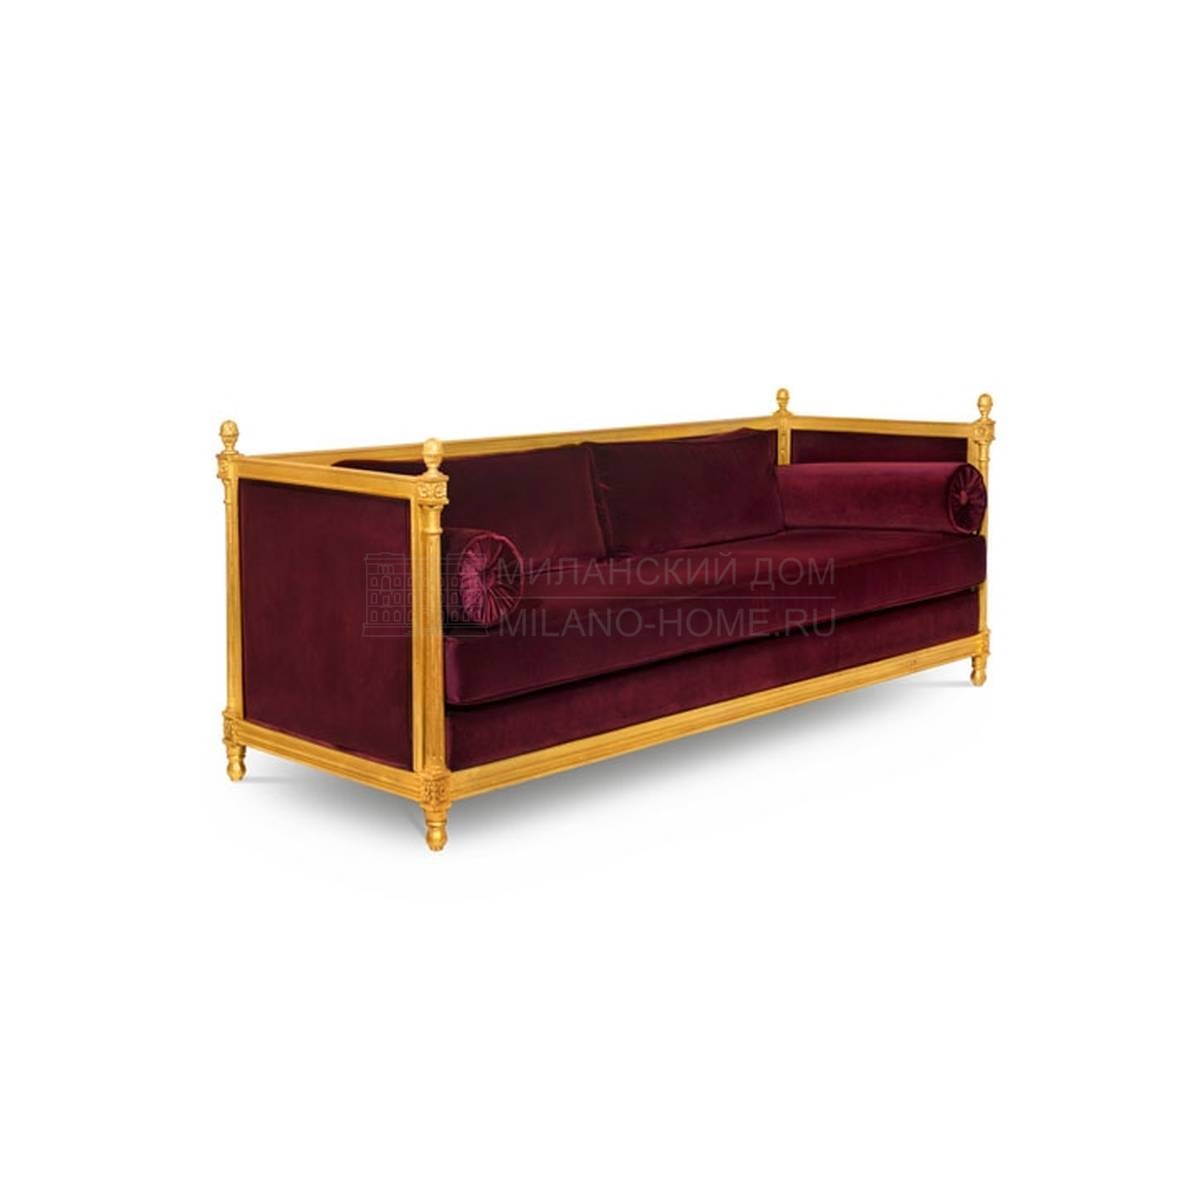 Прямой диван Malkiy/sofa из Португалии фабрики BRABBU